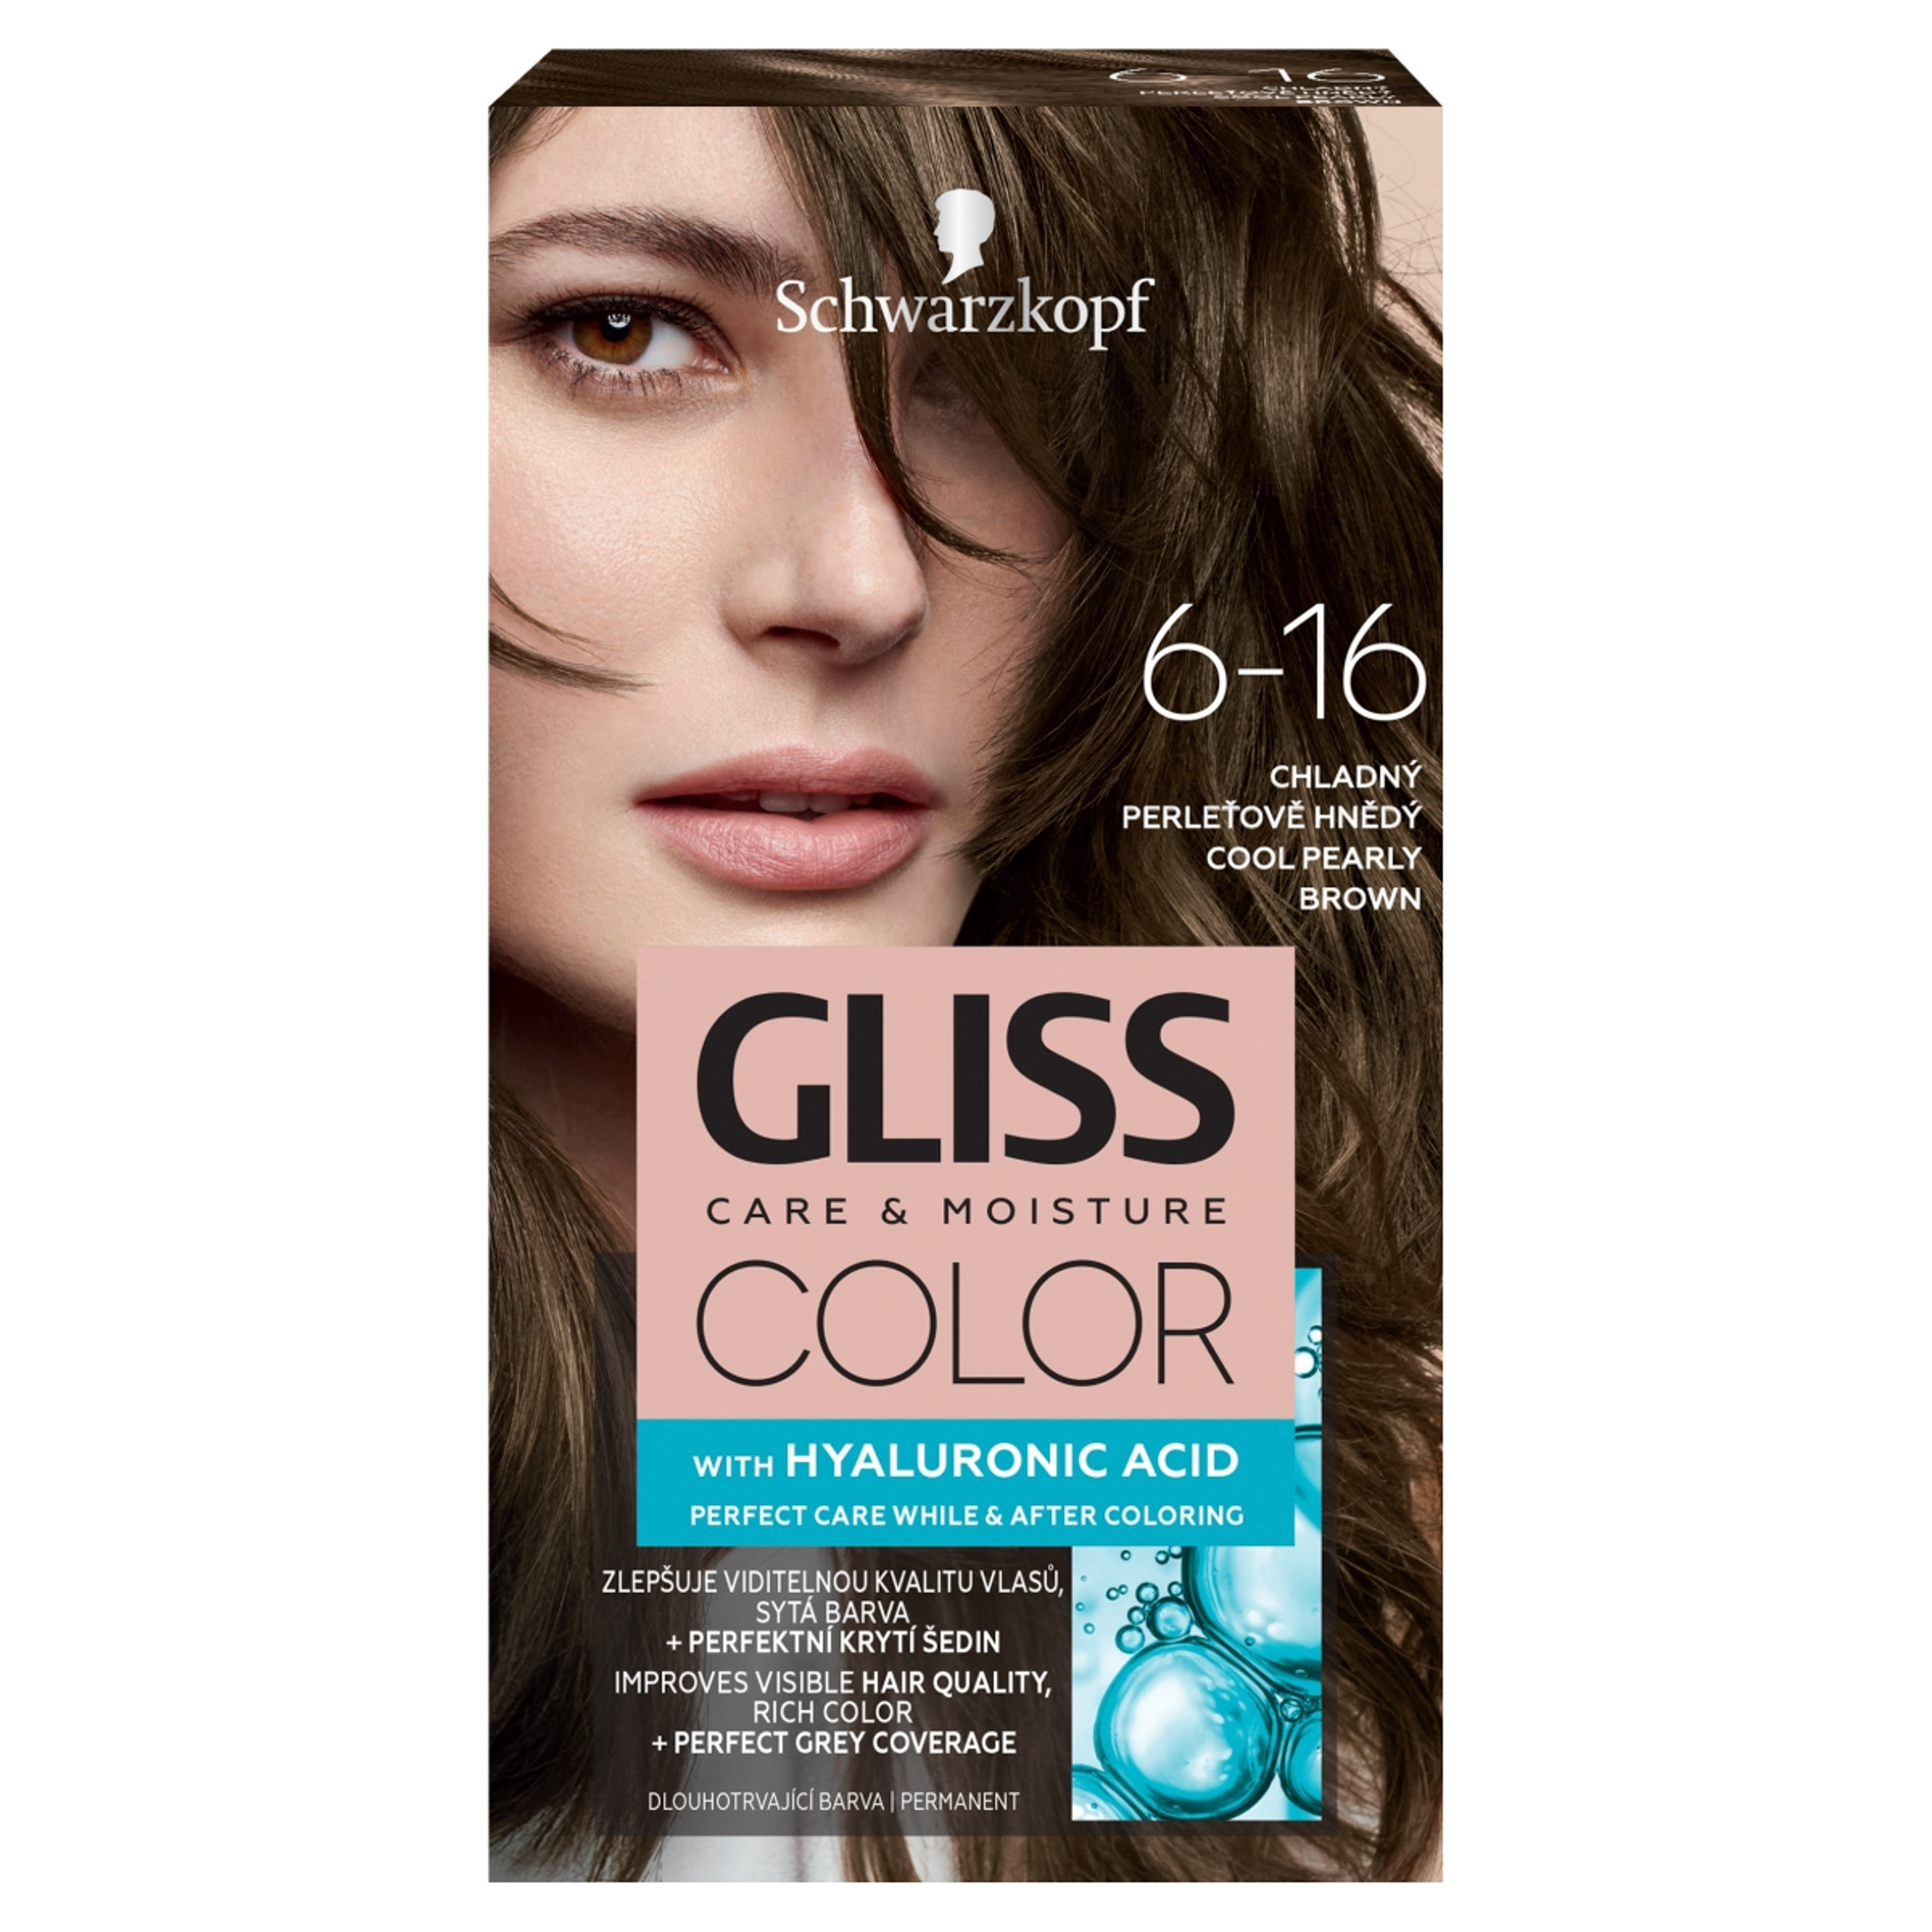 Gliss Color tartós hajfesték 6-16 Hűvös gyöngybarna - 1 db